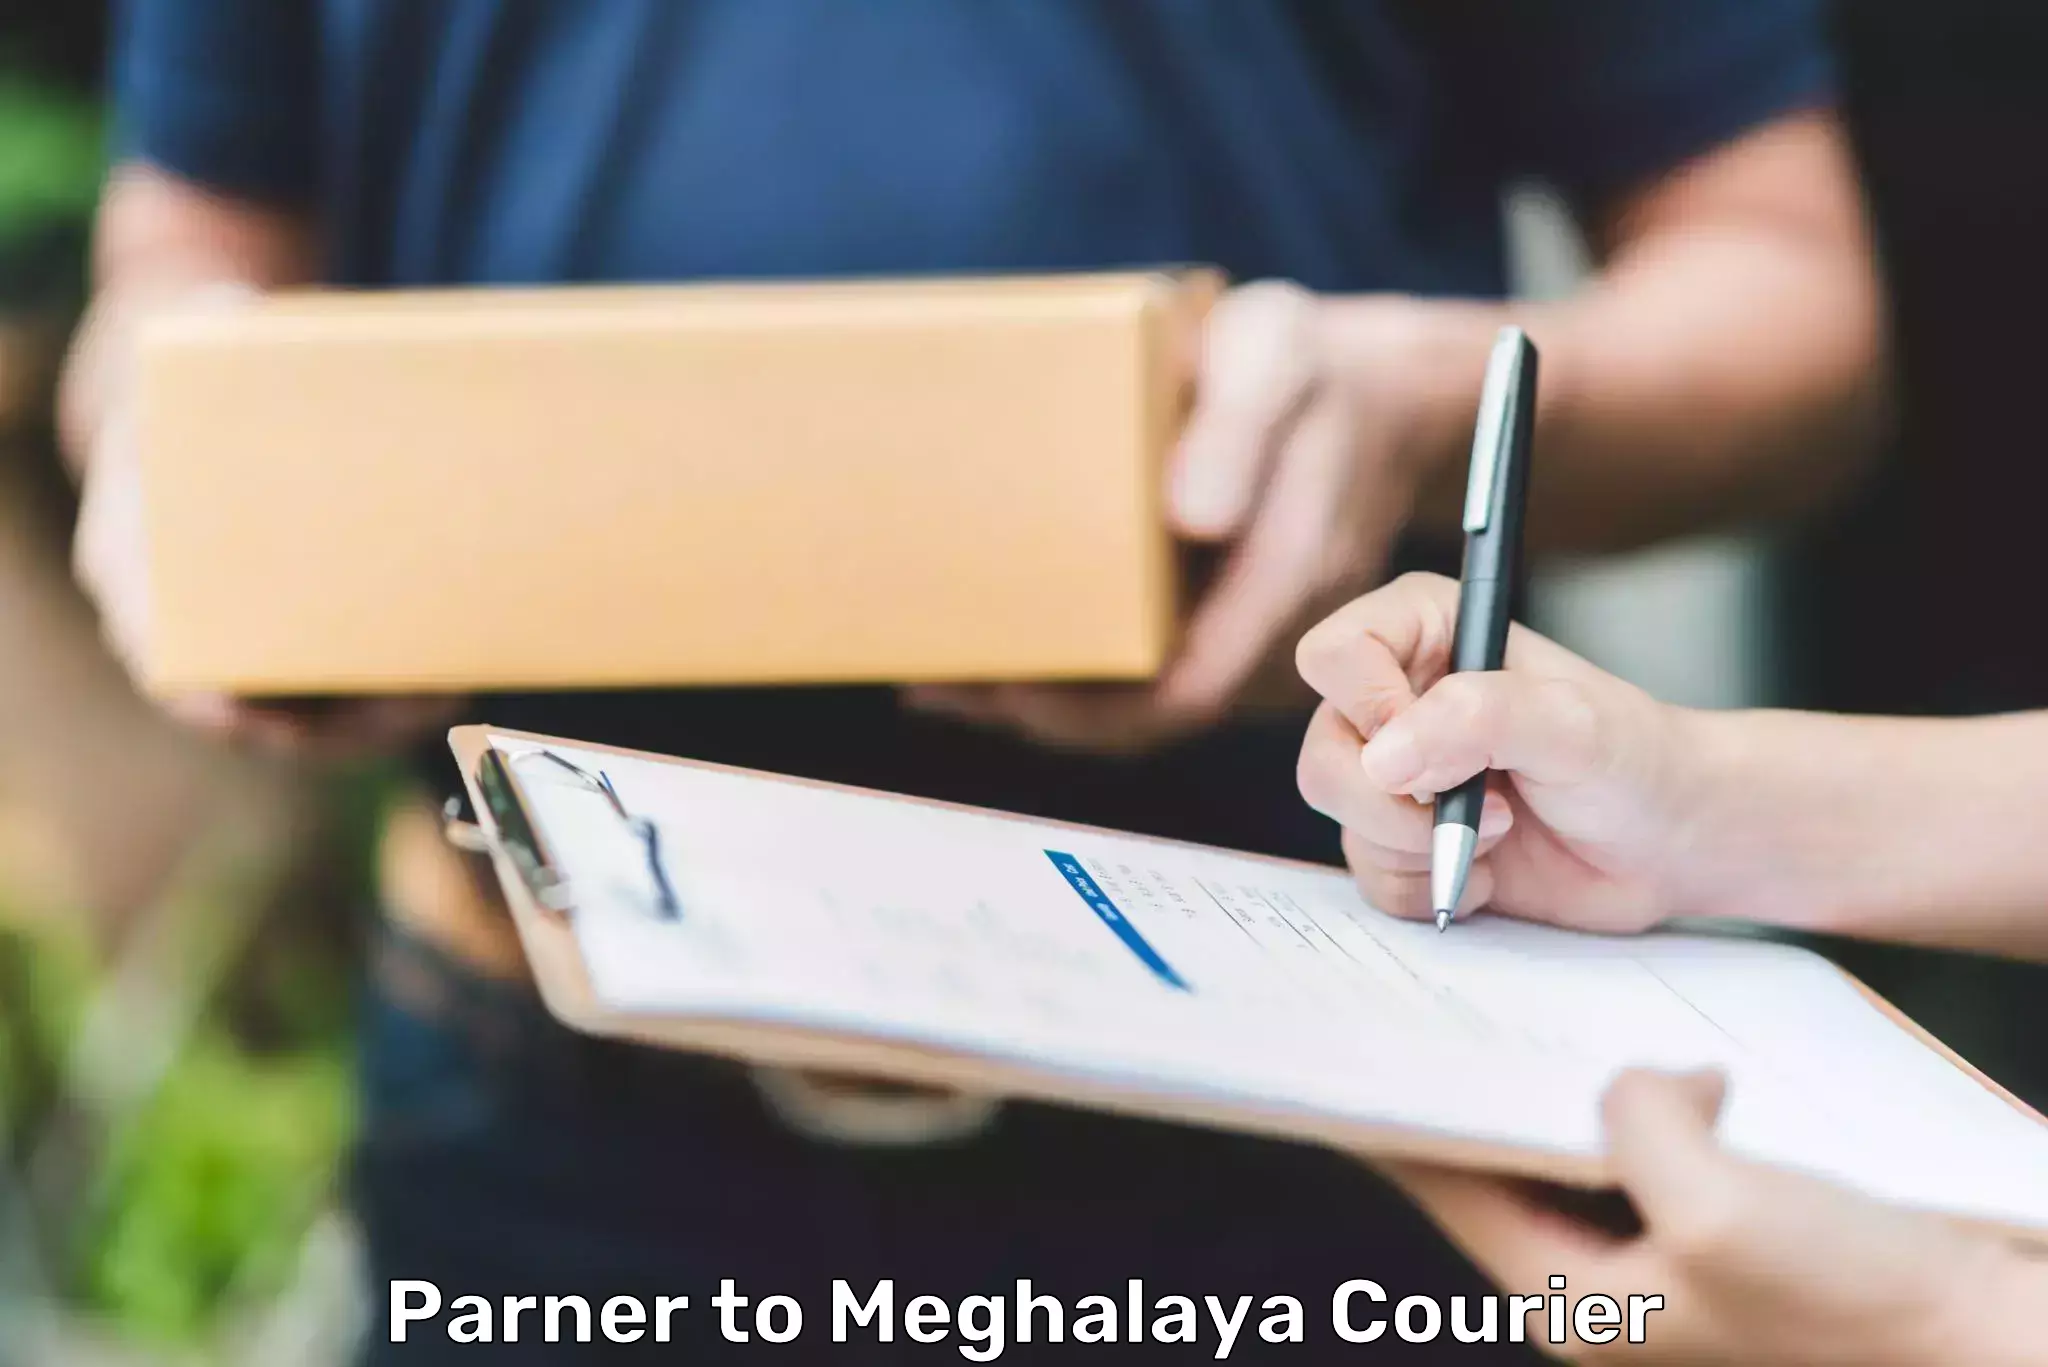 Regular parcel service Parner to NIT Meghalaya